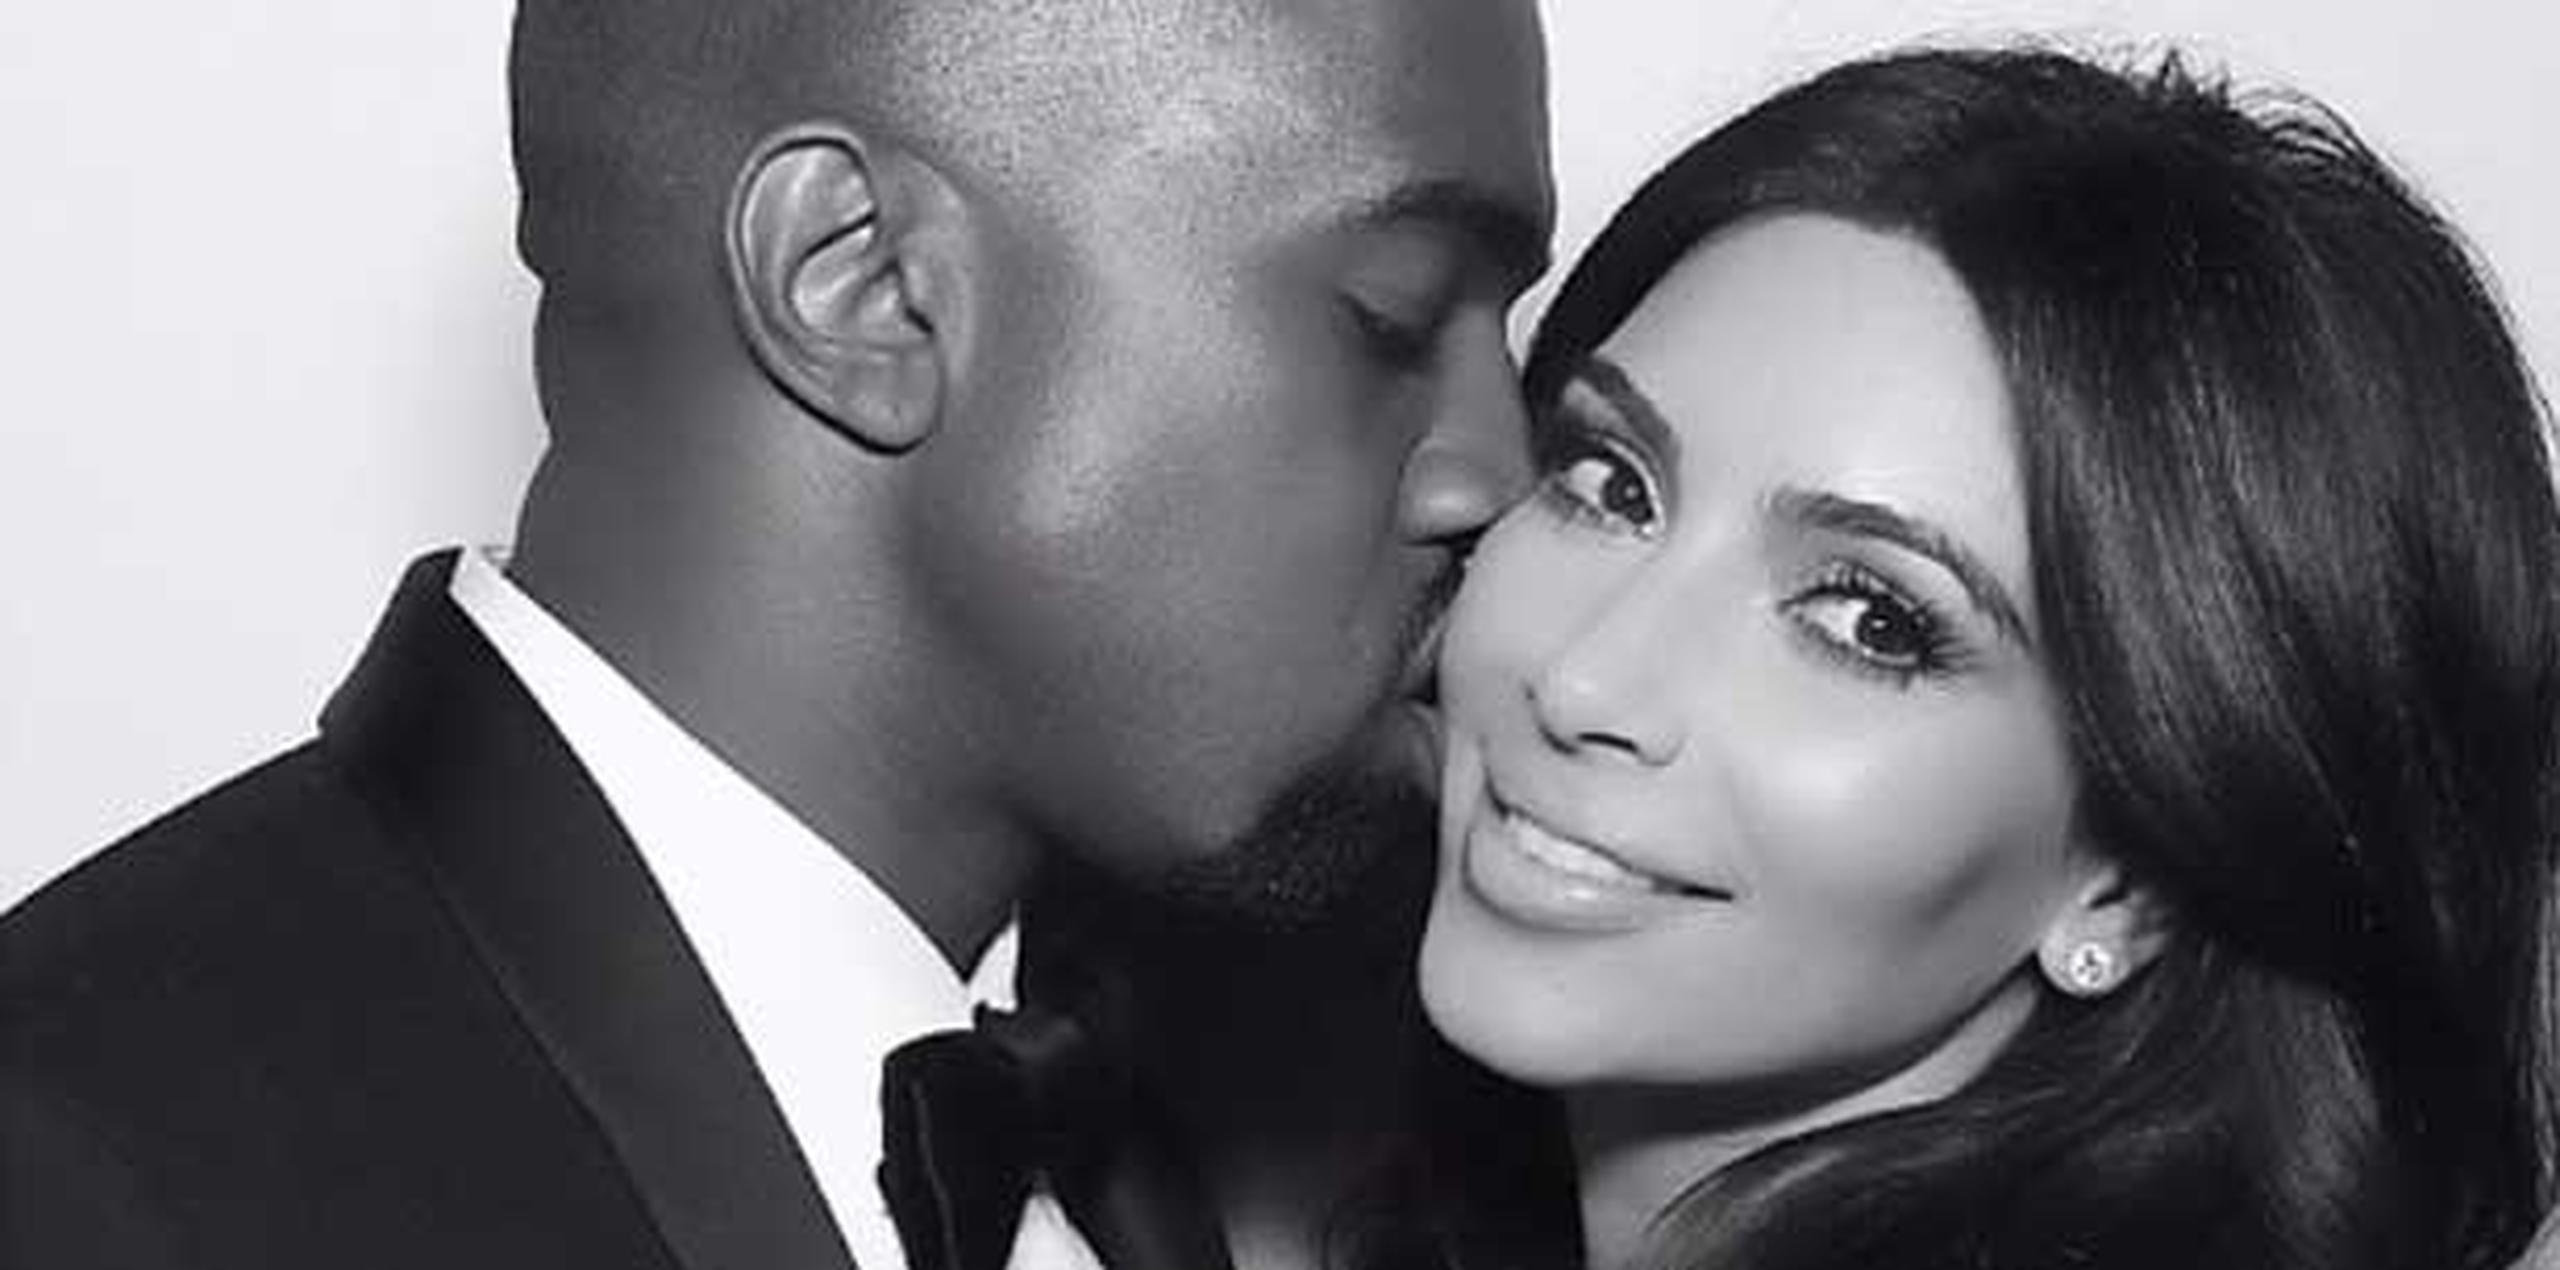 Kardashian publicó en Instagram y Twitter un mensaje para su esposo, el rapero Kanye West. (Instagram)